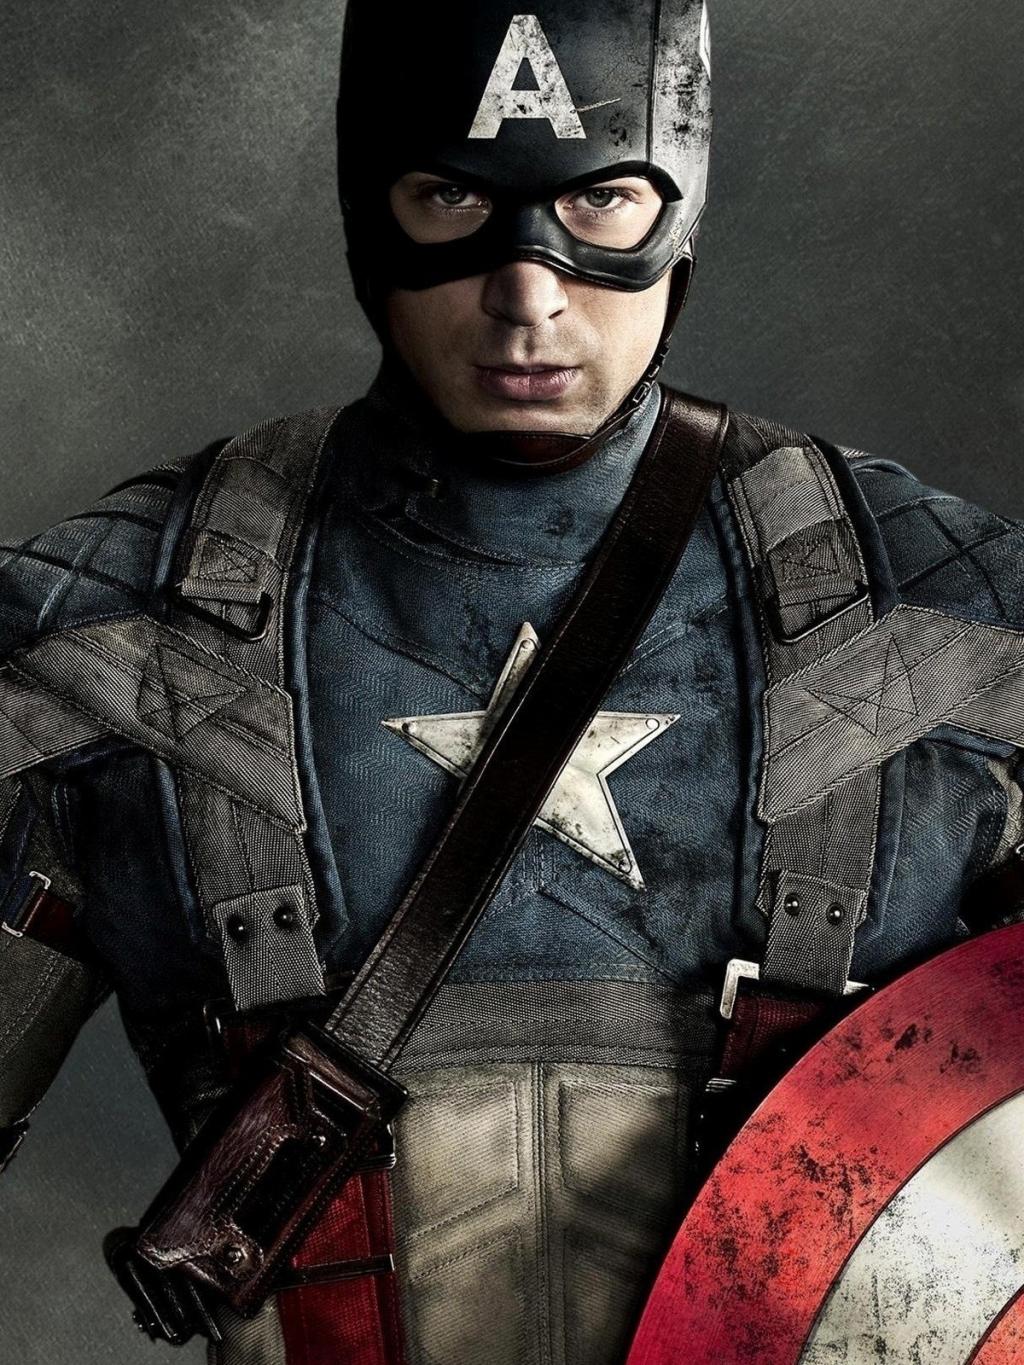 Captain America: The First Avenger 美国队长 高清壁纸14 - 1680x1050 壁纸下载 ...